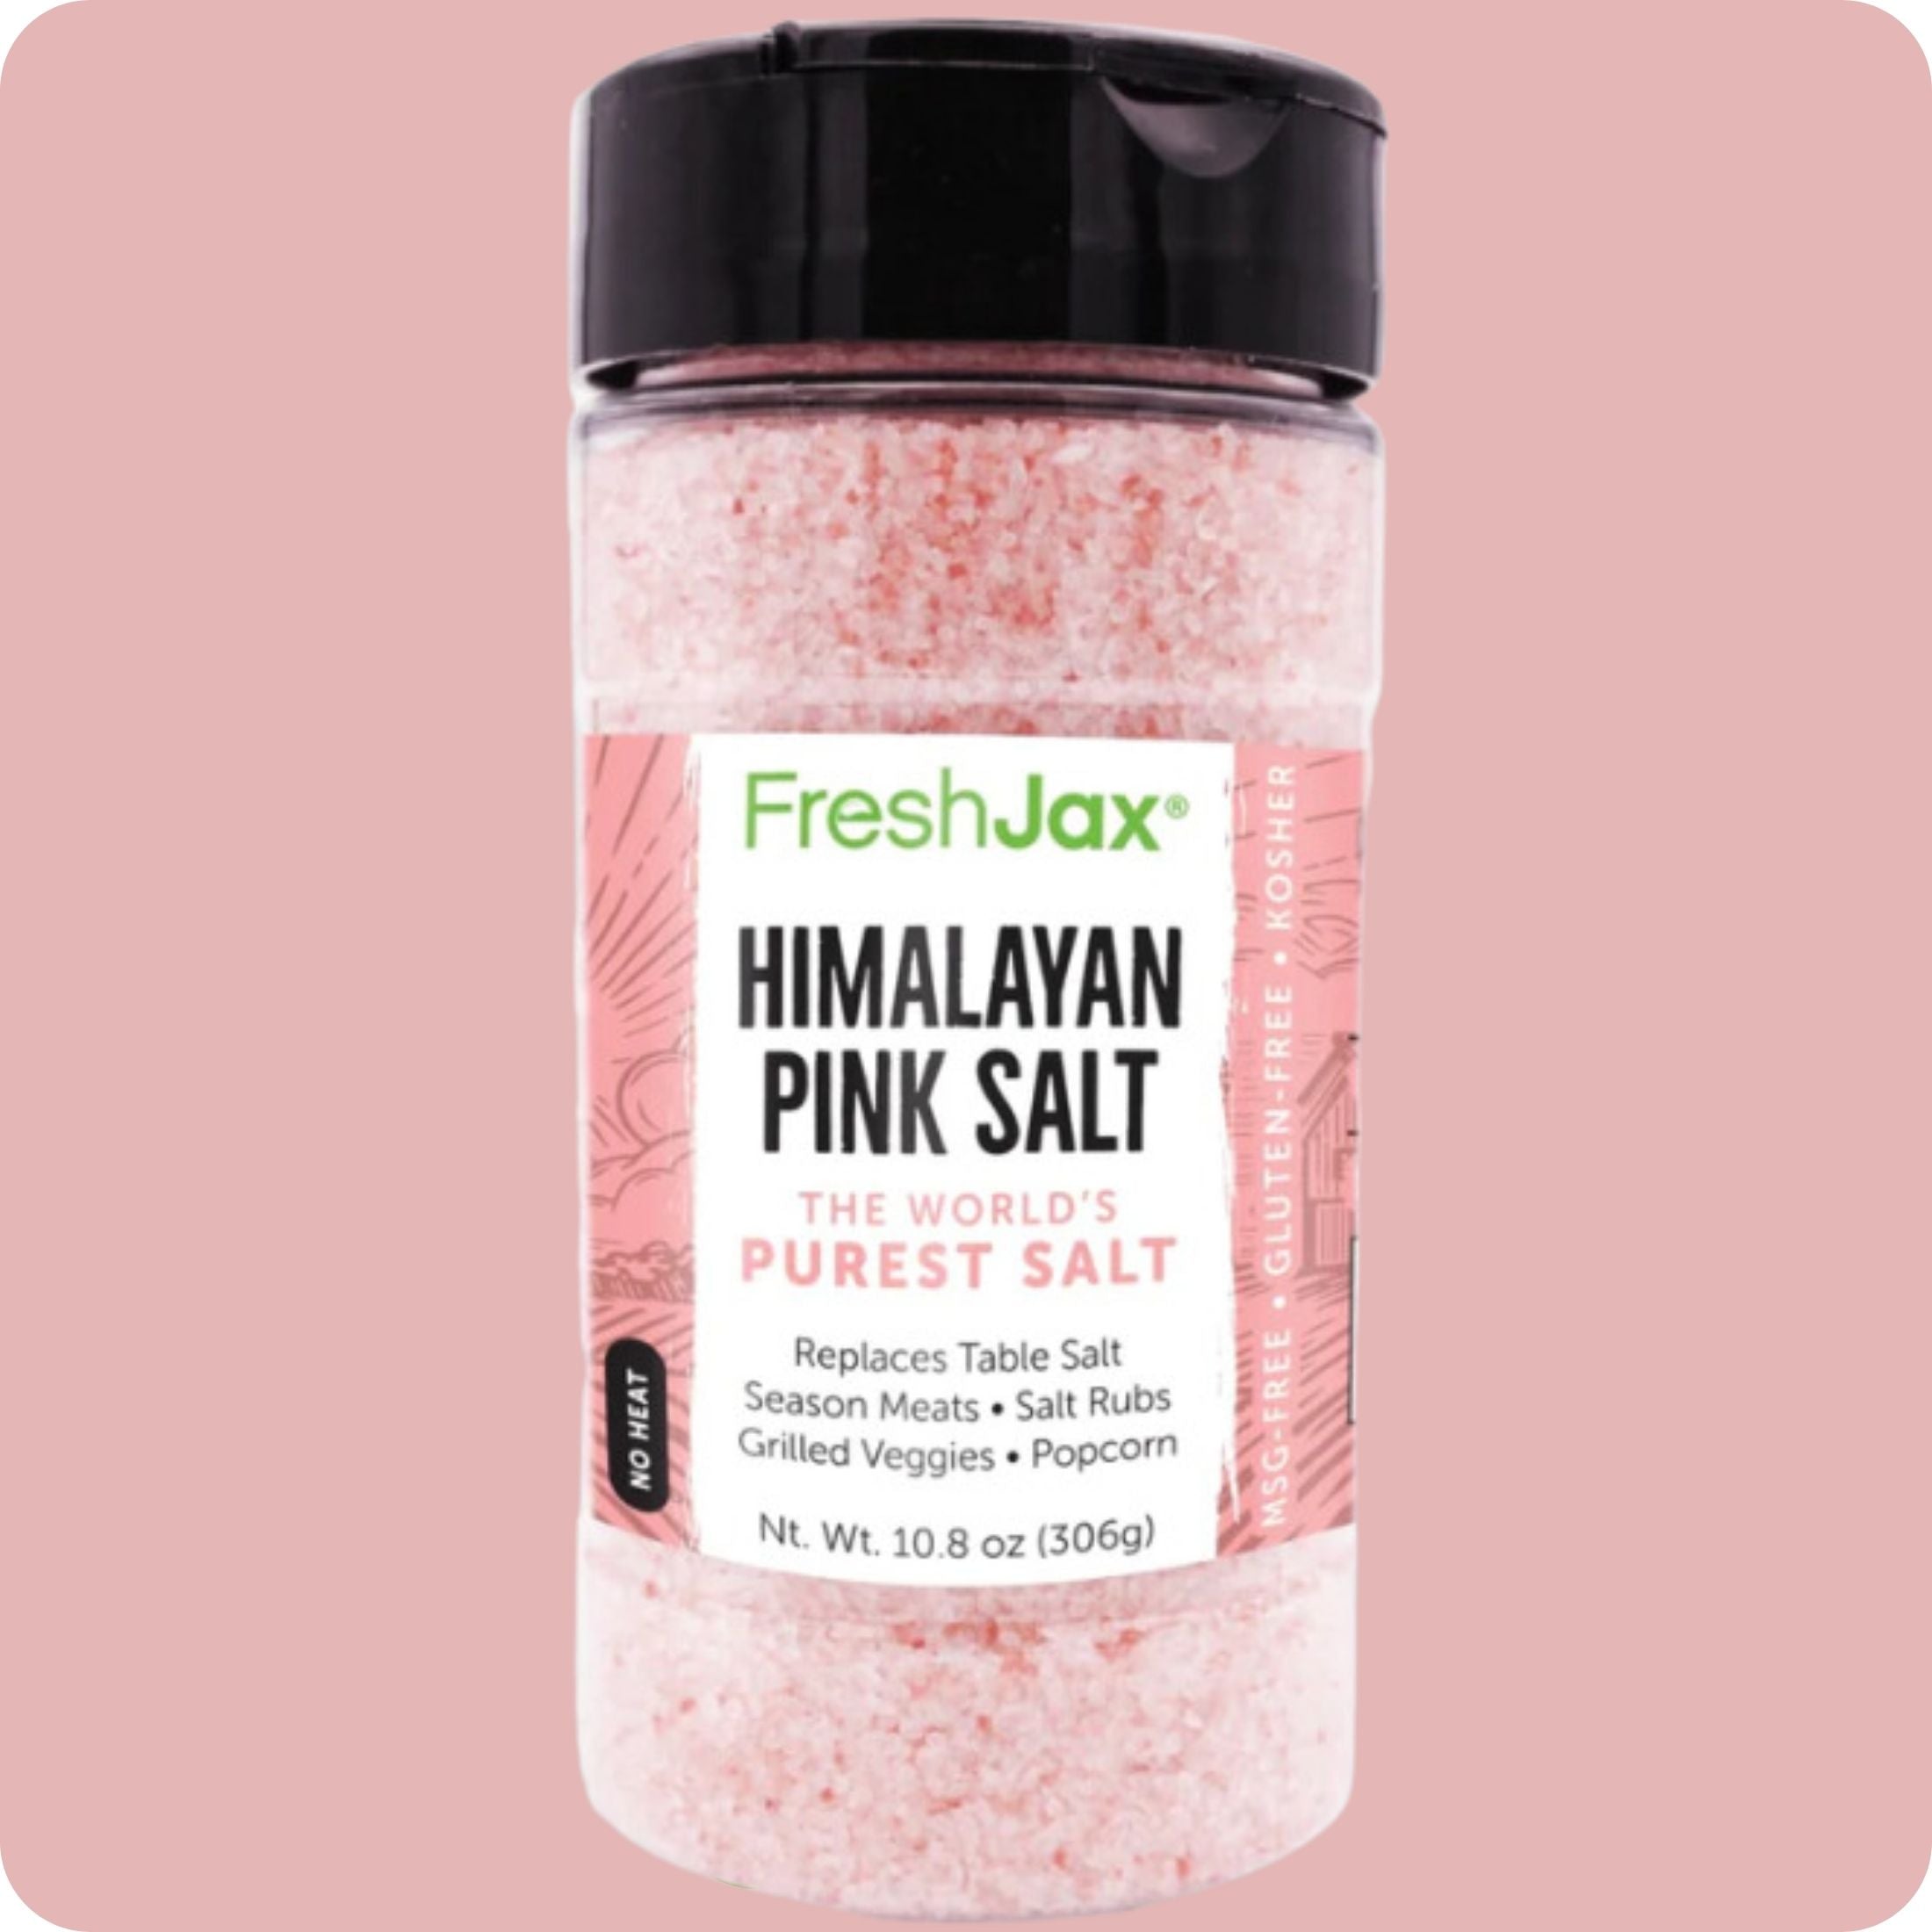 FreshJax Himalayan Pink Salt